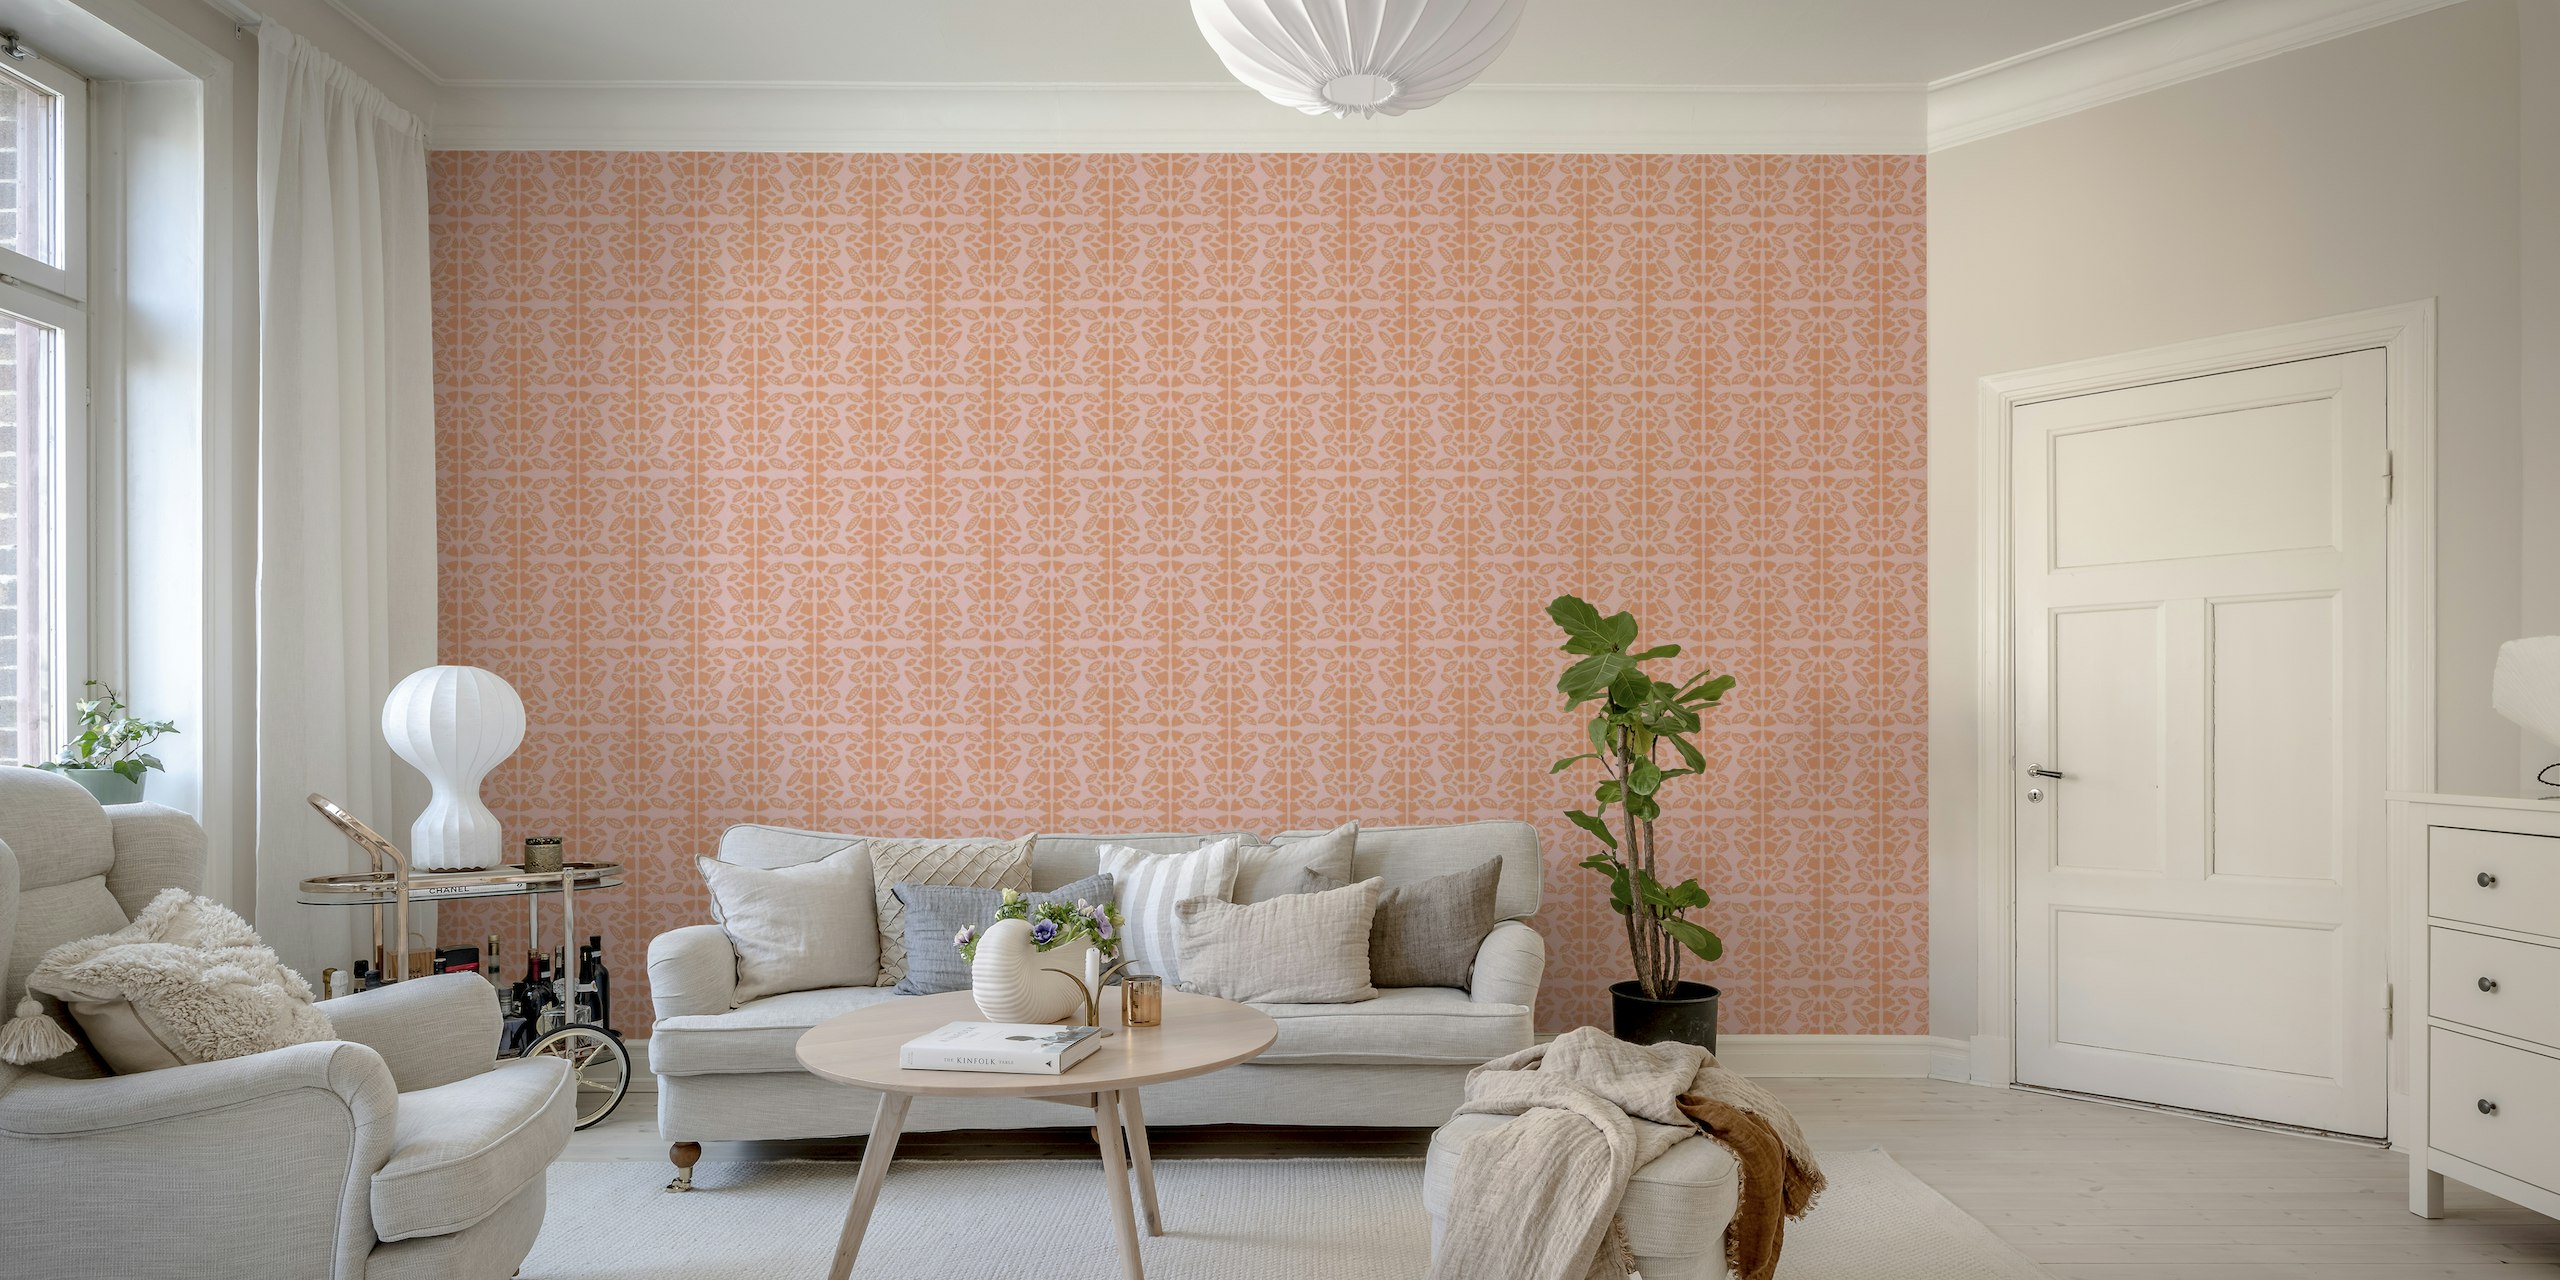 Mural de parede rosa claro com delicados padrões botânicos